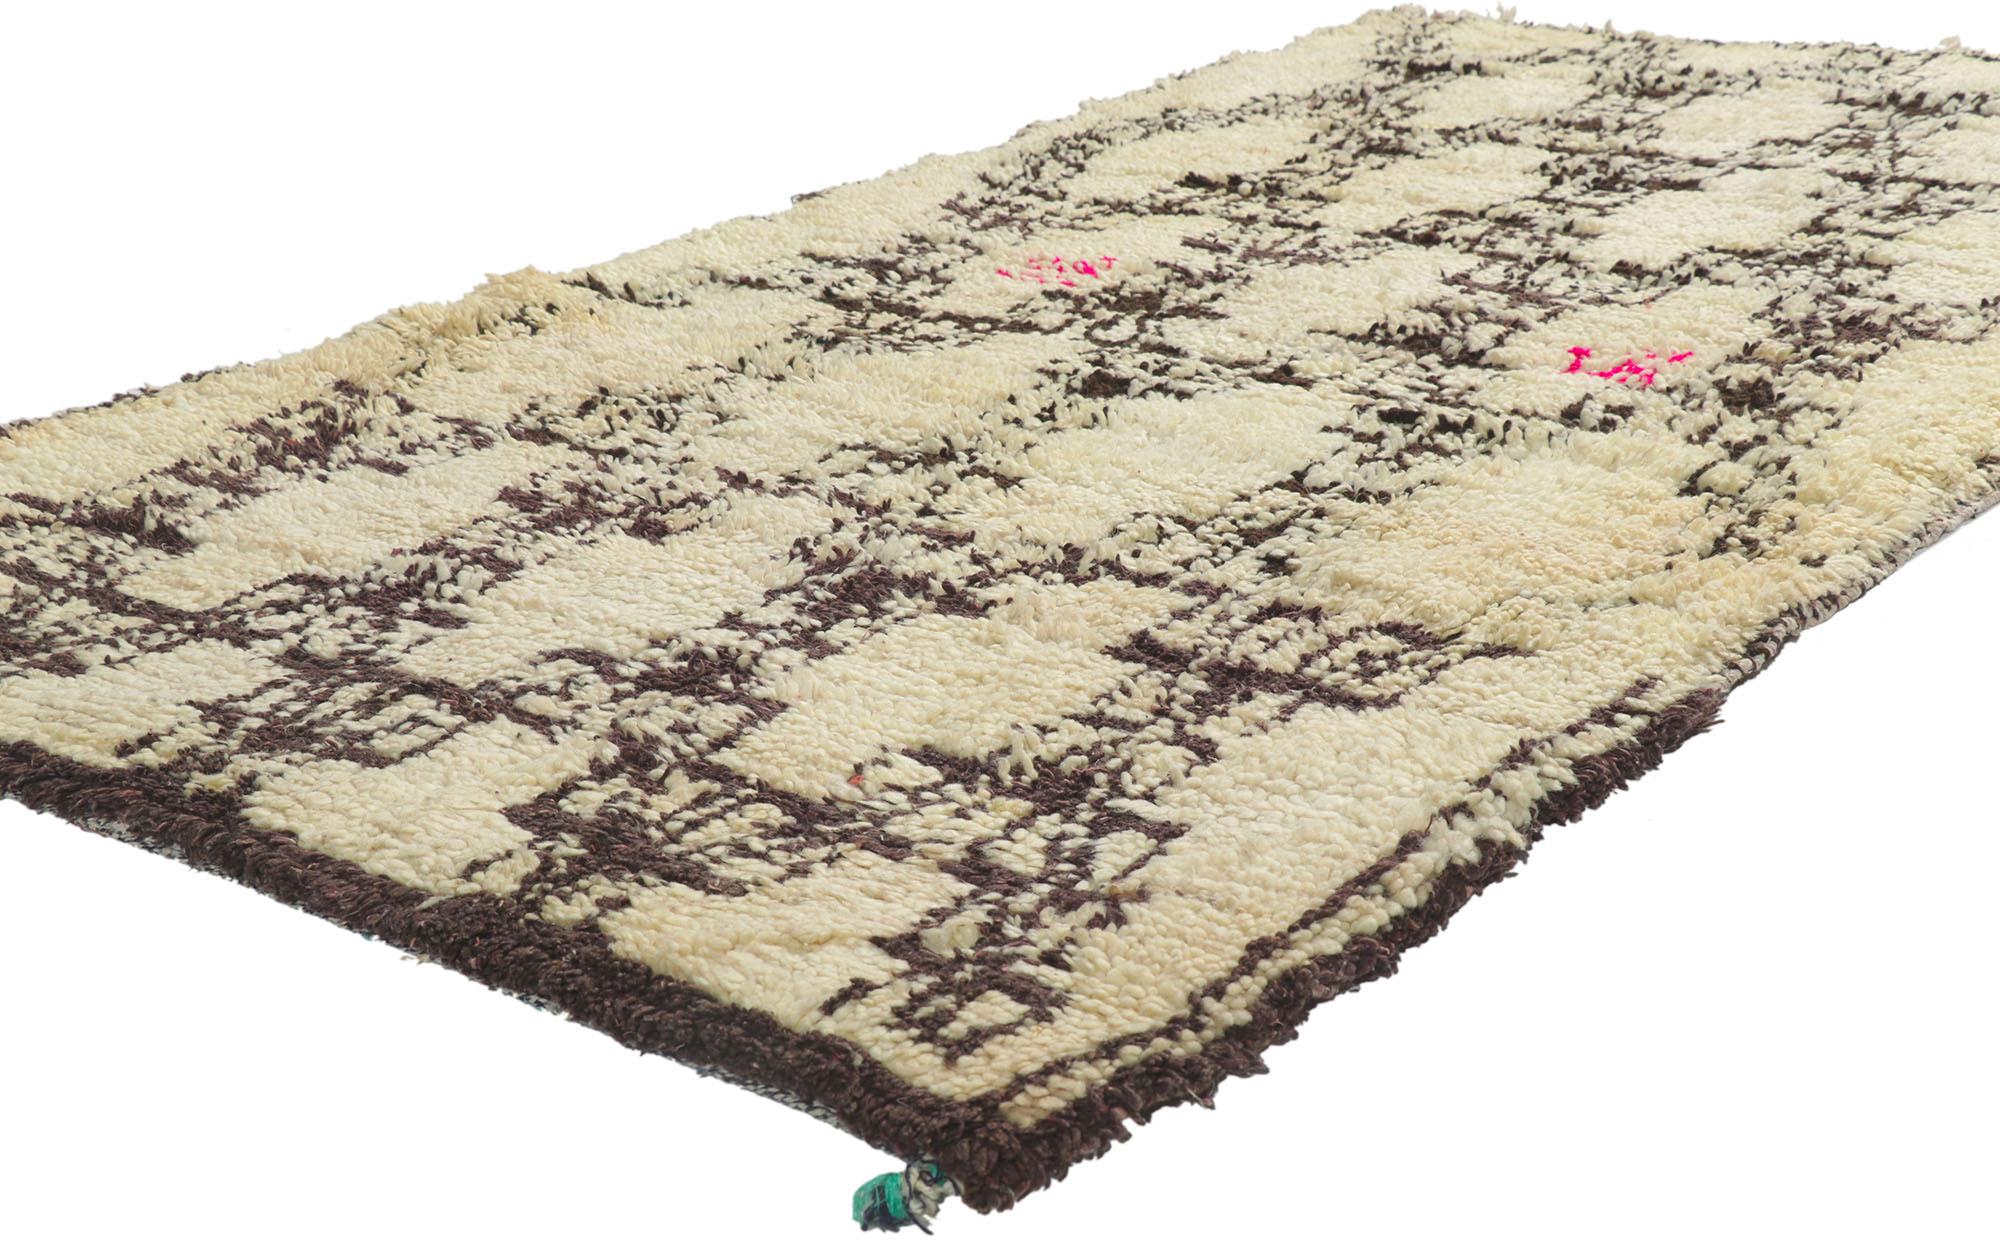 21588 Vintage Marokkanischer Azilal-Teppich, 03'11 x 07'04.
Neutrale Bohème trifft auf natürliche Eleganz in diesem handgeknüpften marokkanischen Azilal-Teppich aus Vintage-Berberwolle. Das filigrane Gitter und die neutralen Farben, die in das Stück